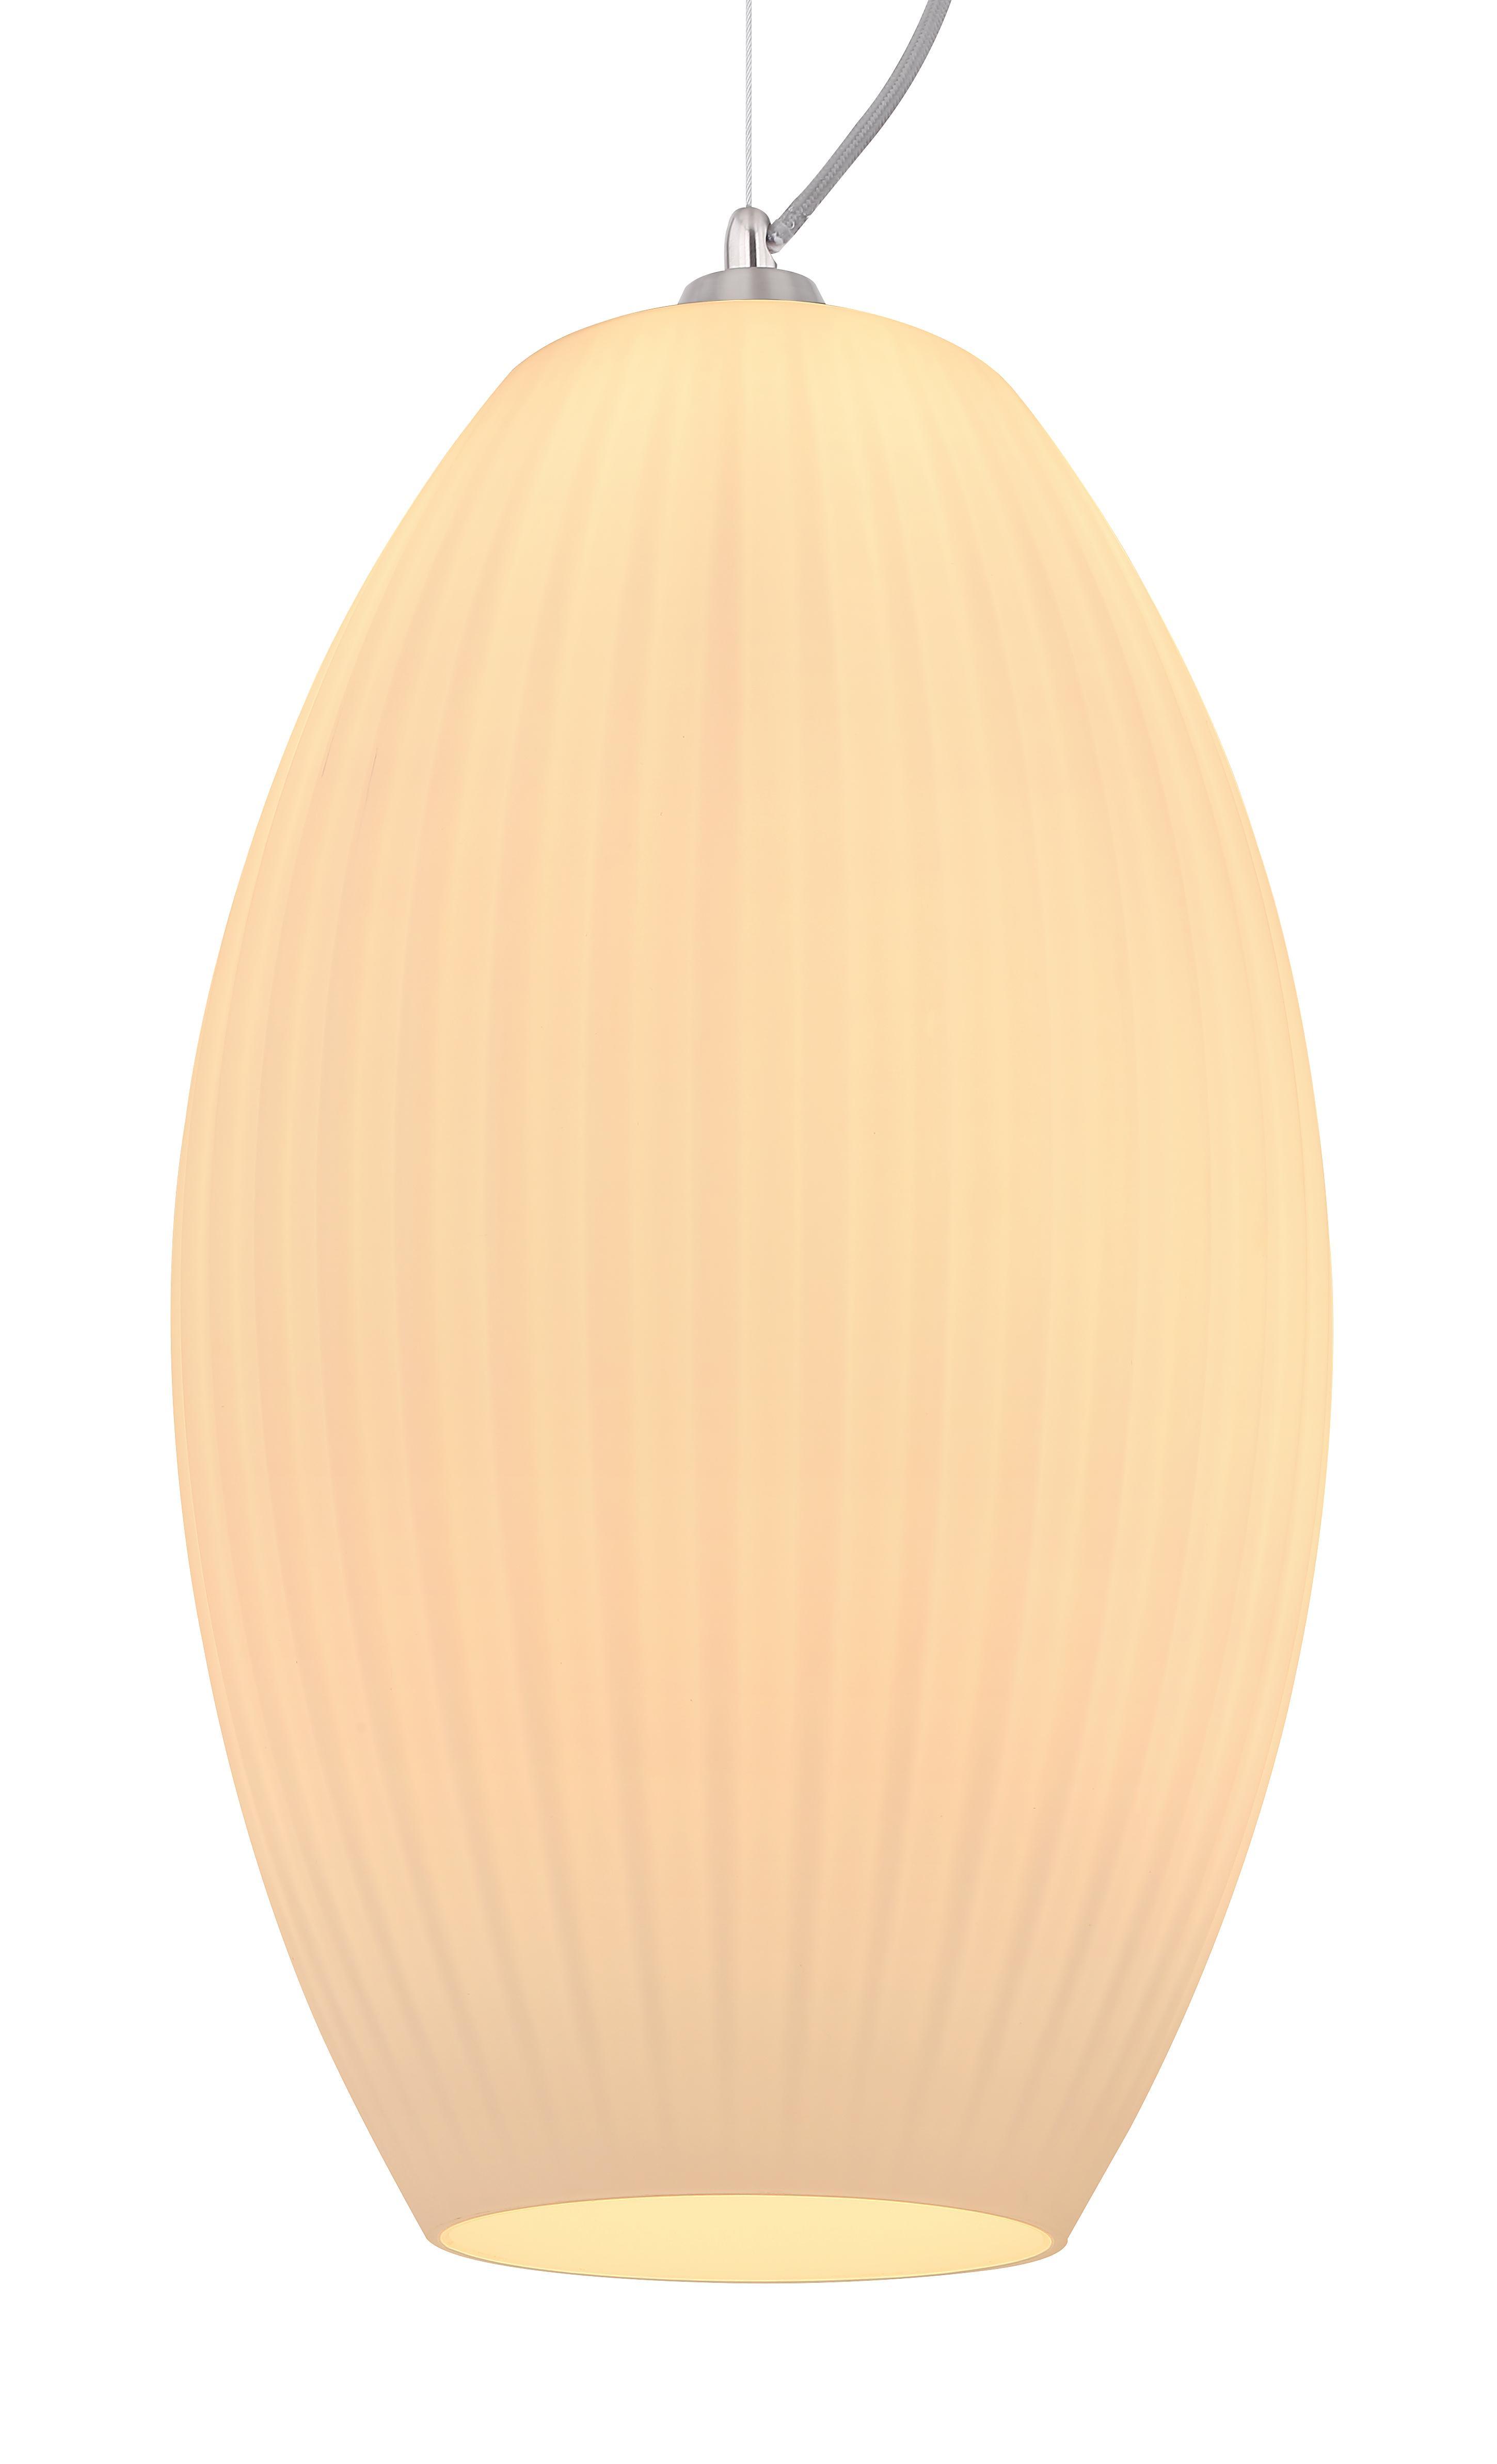 Lampada a sospensione GLOBO serie HING, in nichel satinato, vetro opale bianco, lampadina NON inclusa